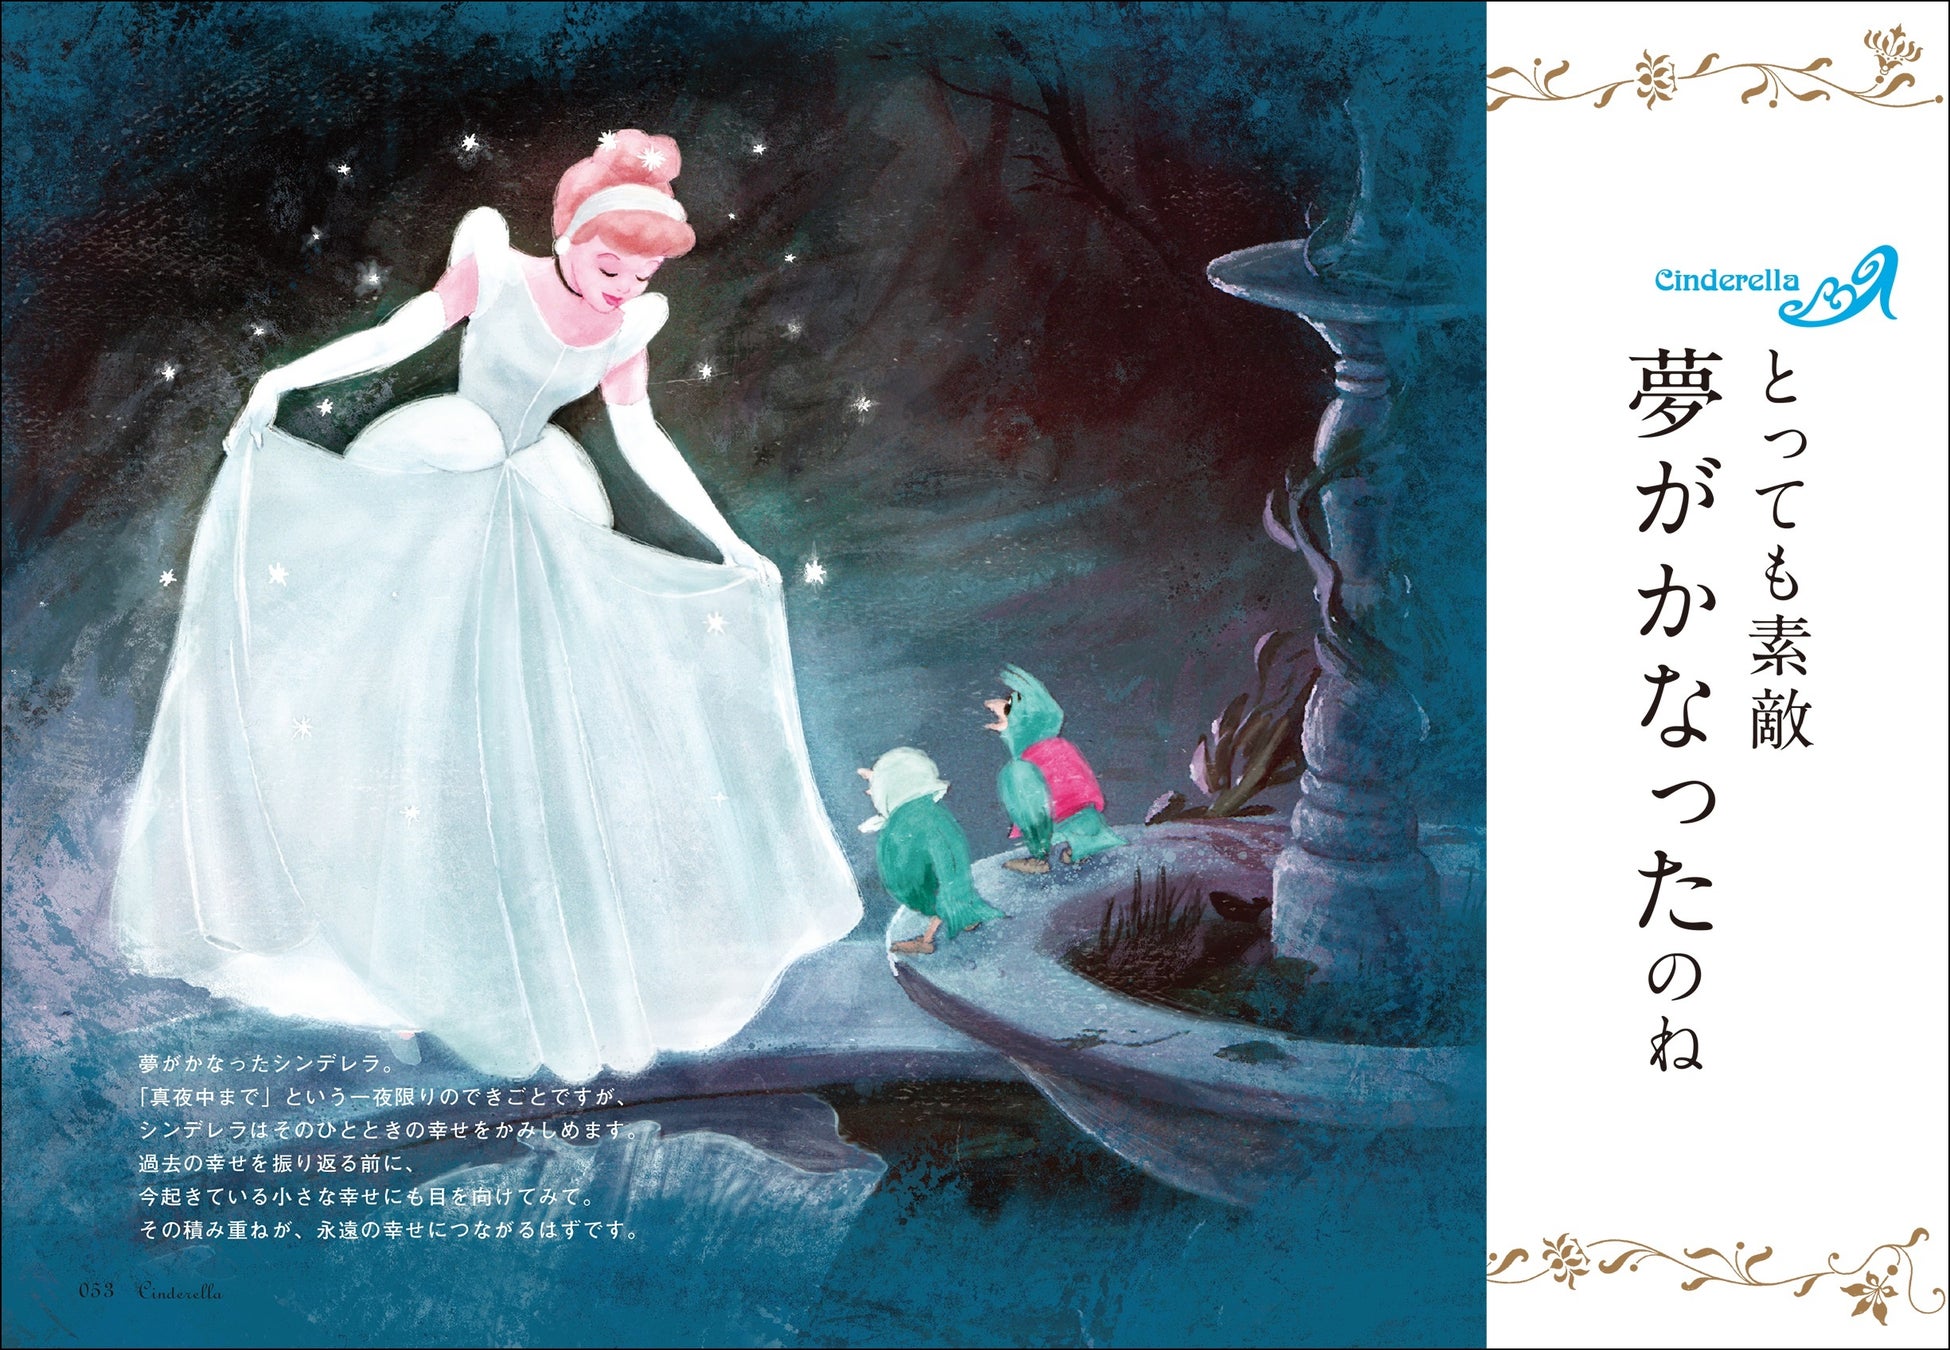 プレゼントにぴったり プリンセスの名言とイラストに癒される ディズニープリンセスのことば 幸せはずっとこの胸 の中に 発売 株式会社kadokawaのプレスリリース